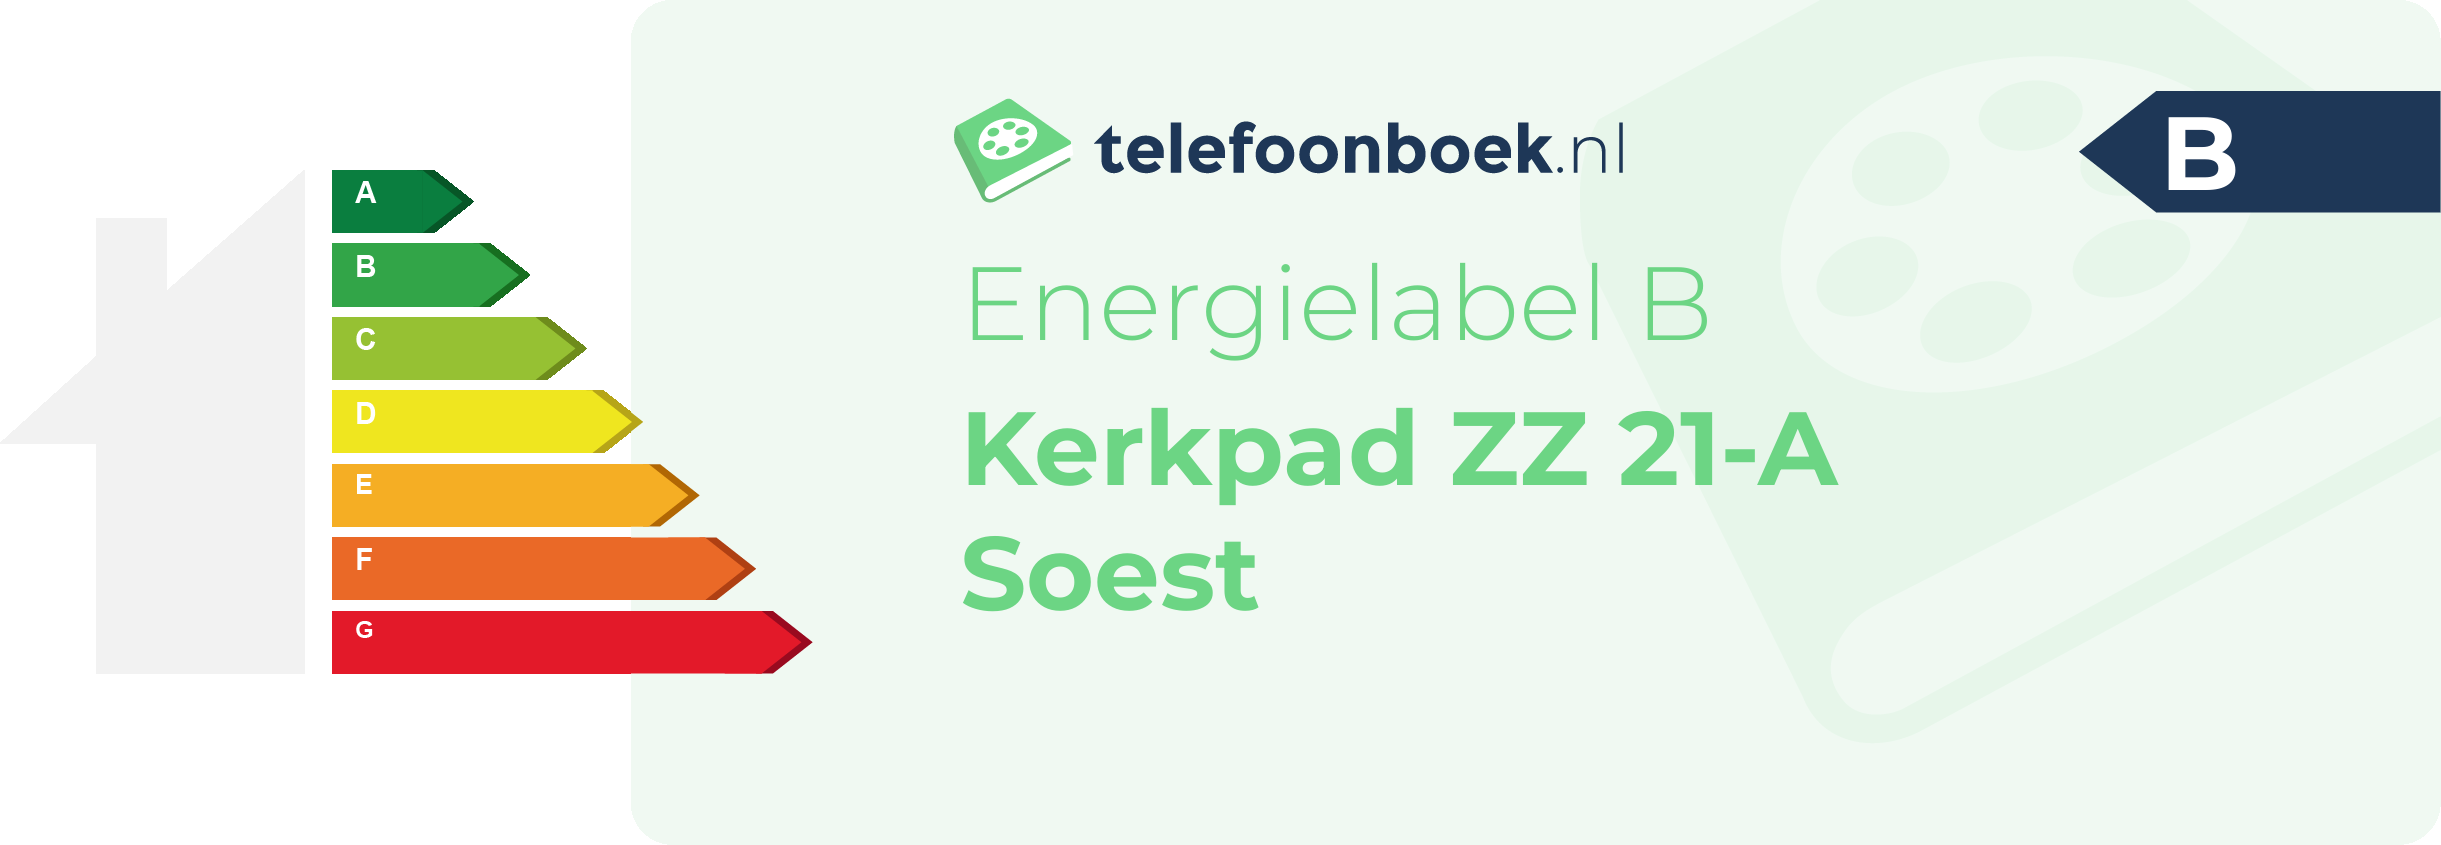 Energielabel Kerkpad ZZ 21-A Soest